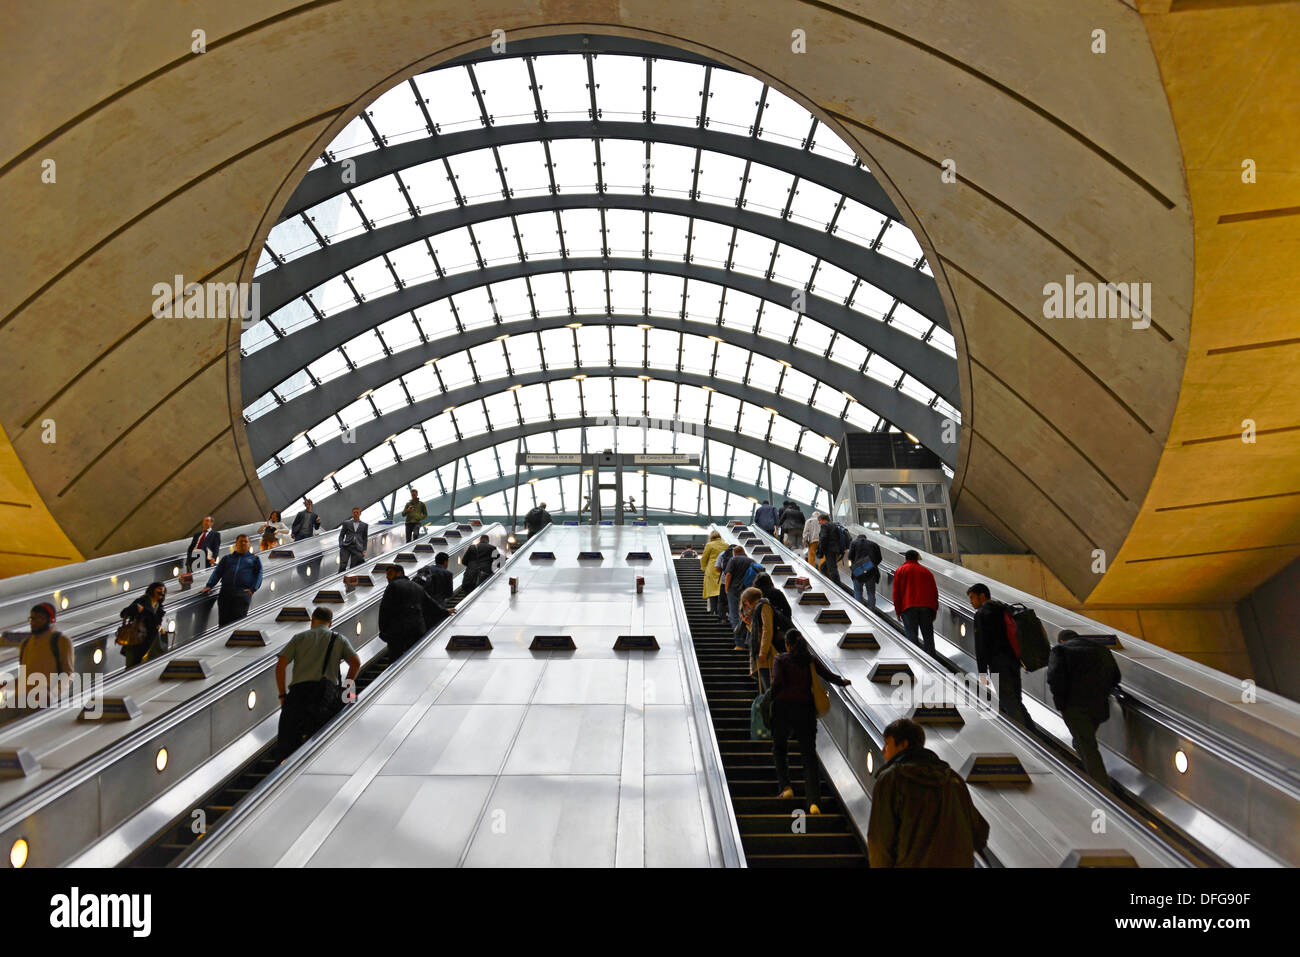 Escaliers mécaniques à la station de métro Canary Wharf, London Underground, Londres, région de London, Angleterre, Royaume-Uni Banque D'Images